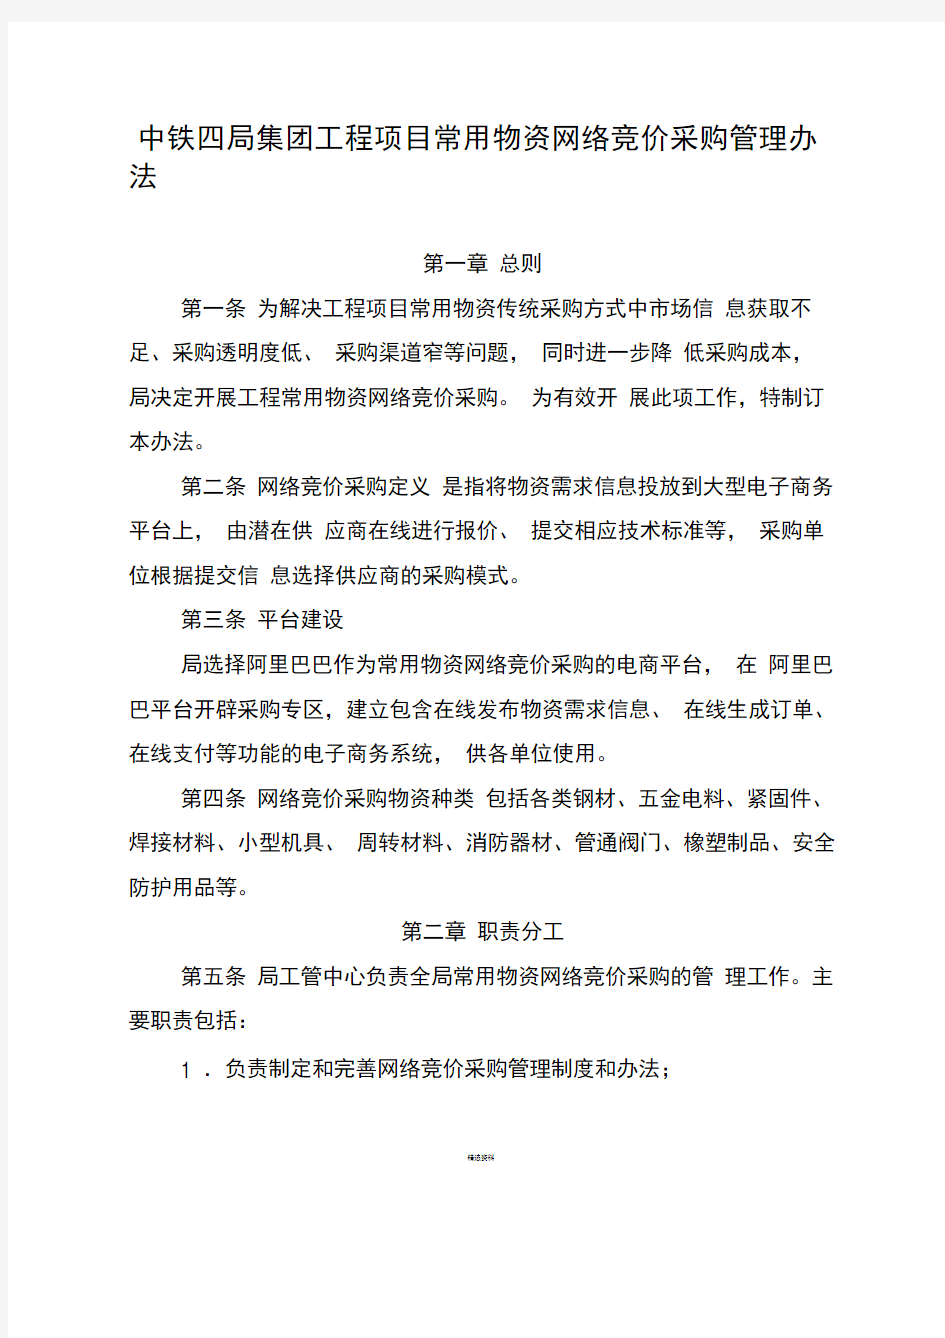 中铁四局集团工程项目常用物资网络竞价采购管理办法